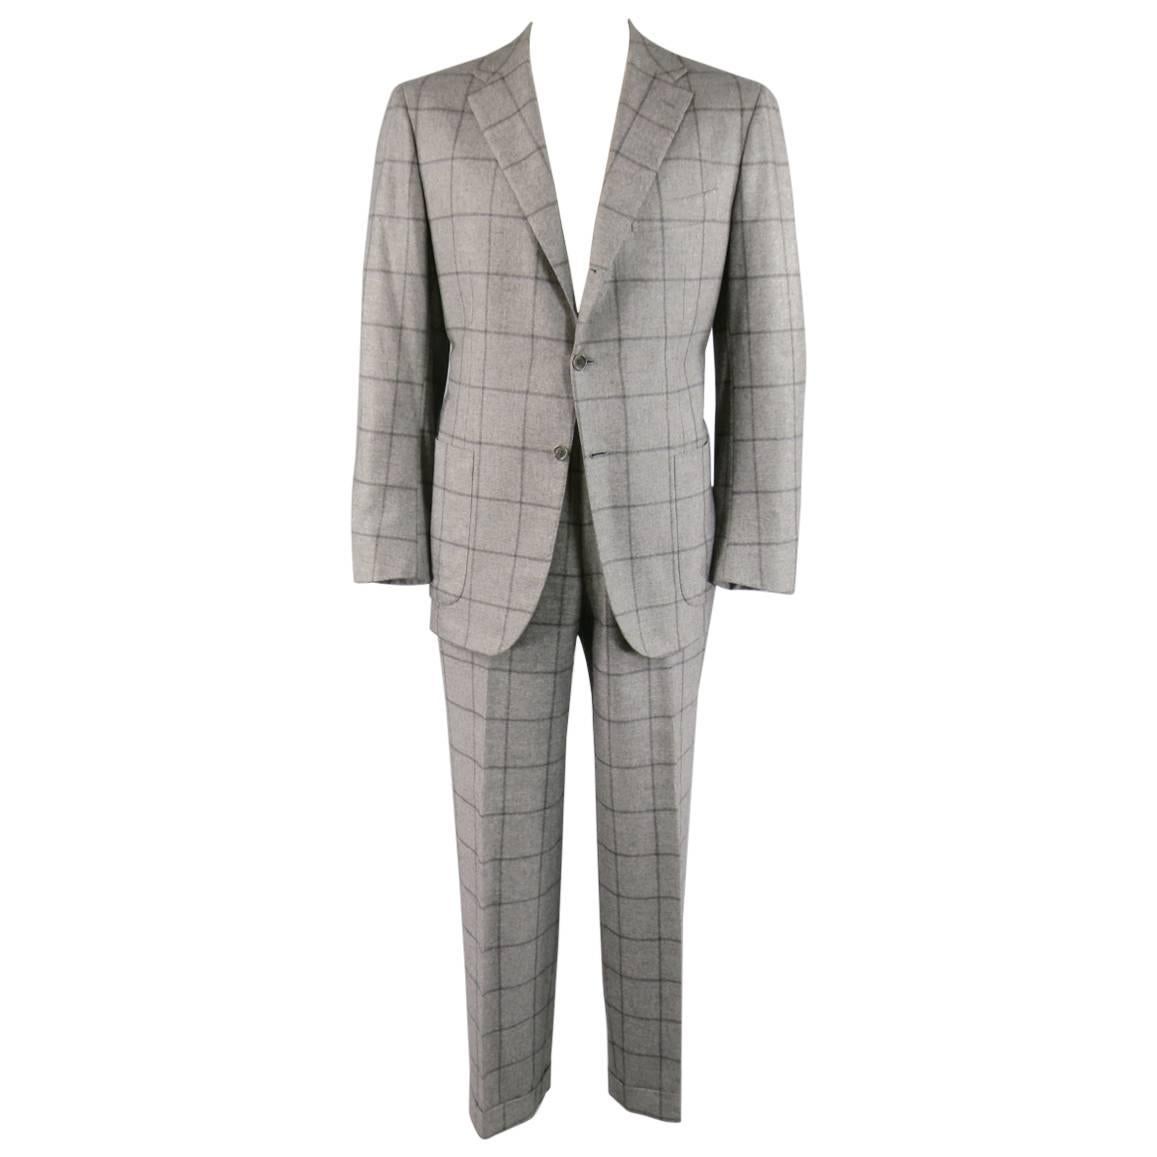 Kiton Men's Suit 46 R 3 Button Gray Windowpane Cashmere Notch Lapel Jacket Pants